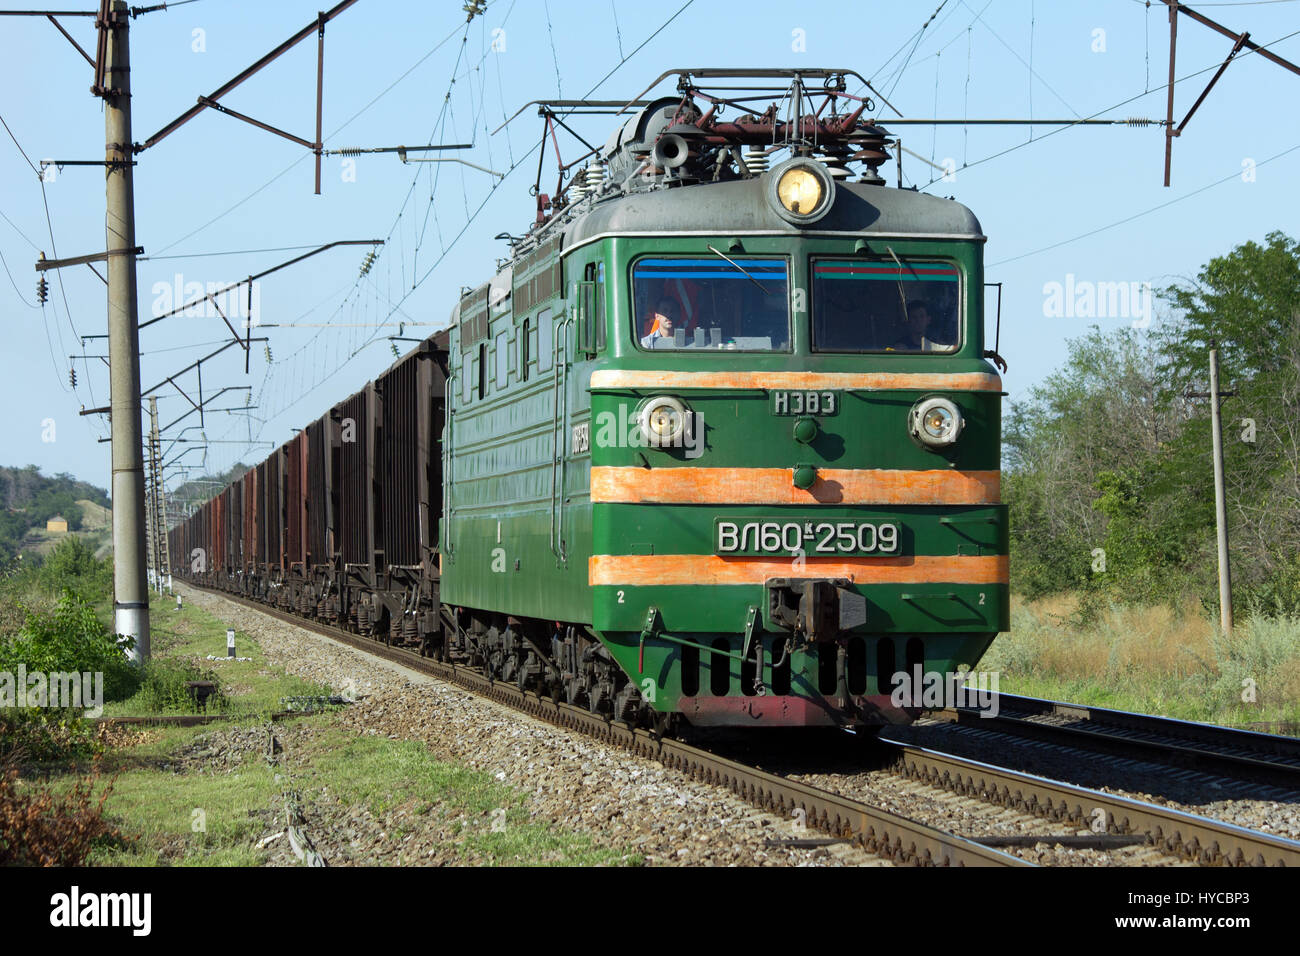 Alte e-Lok, Kochevanchik, Russland, 9. August 2011, elektrische Lokomotive VL60k, in unserer Zeit bereits eine große Seltenheit. Stockfoto